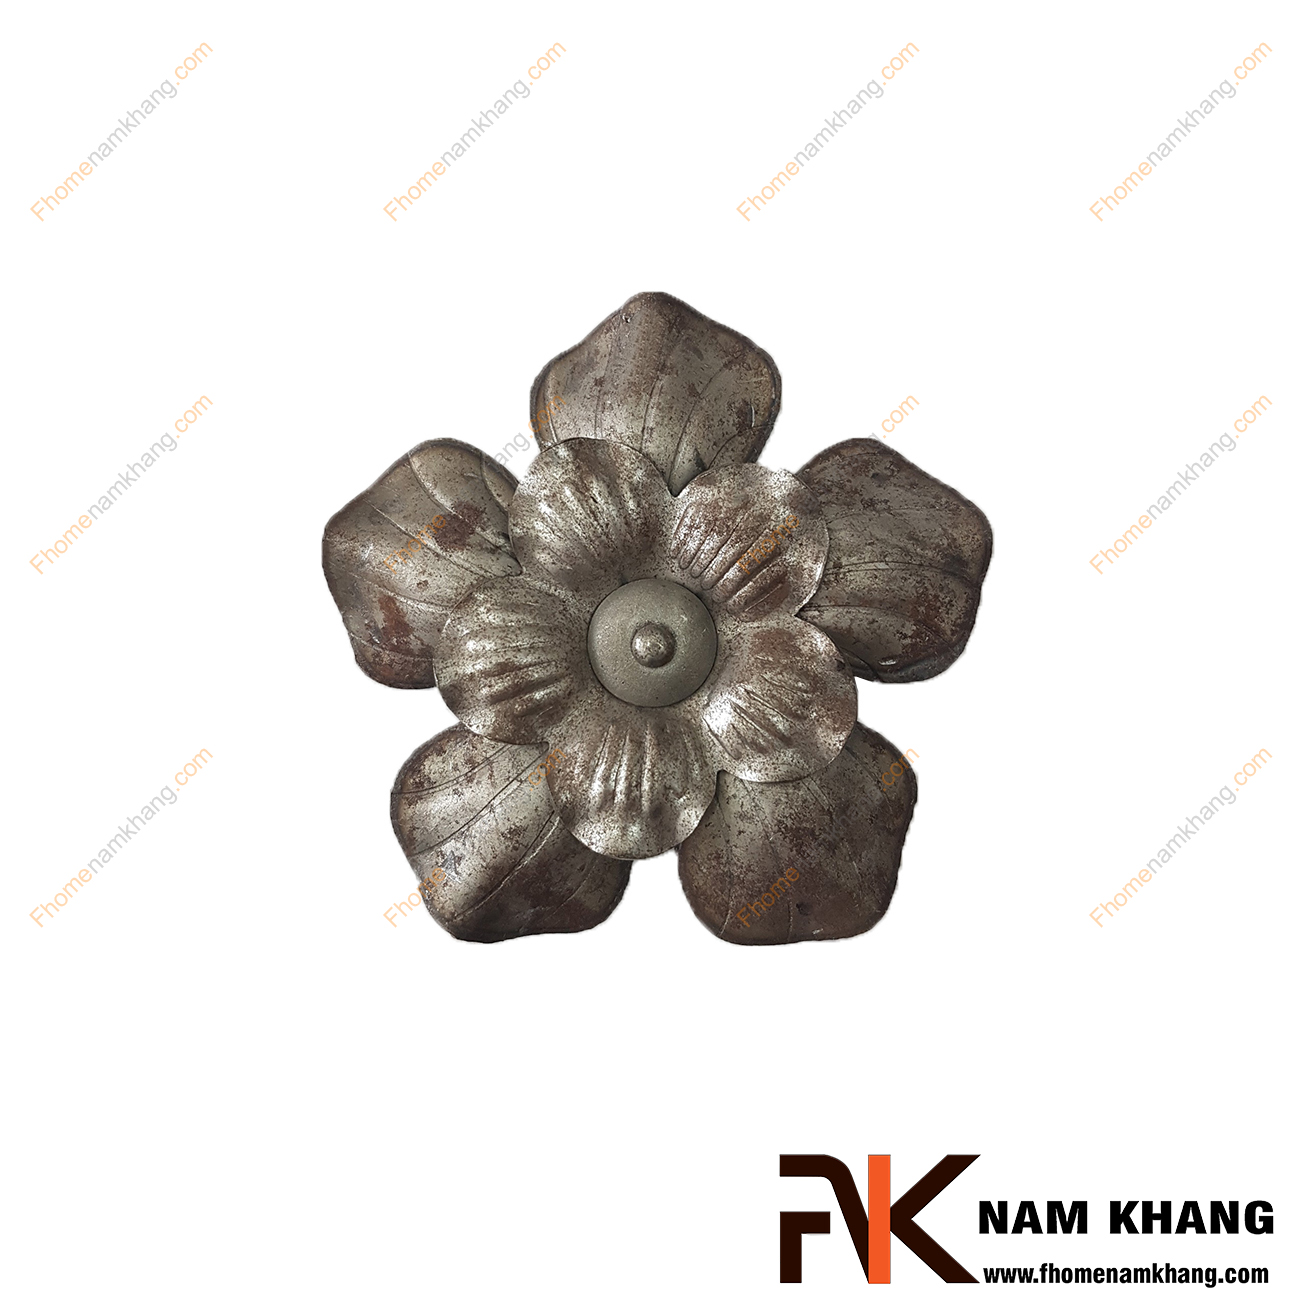 Hoa lá thép dập NKS-121 được tạo hình bông hoa, là phụ kiện trang trí dành cho các sản phẩm bằng sắt uốn mỹ thuật  Chi tiết được dập nỗi trên bề mặt, mô phỏng chính xác chi tiết thực tế.